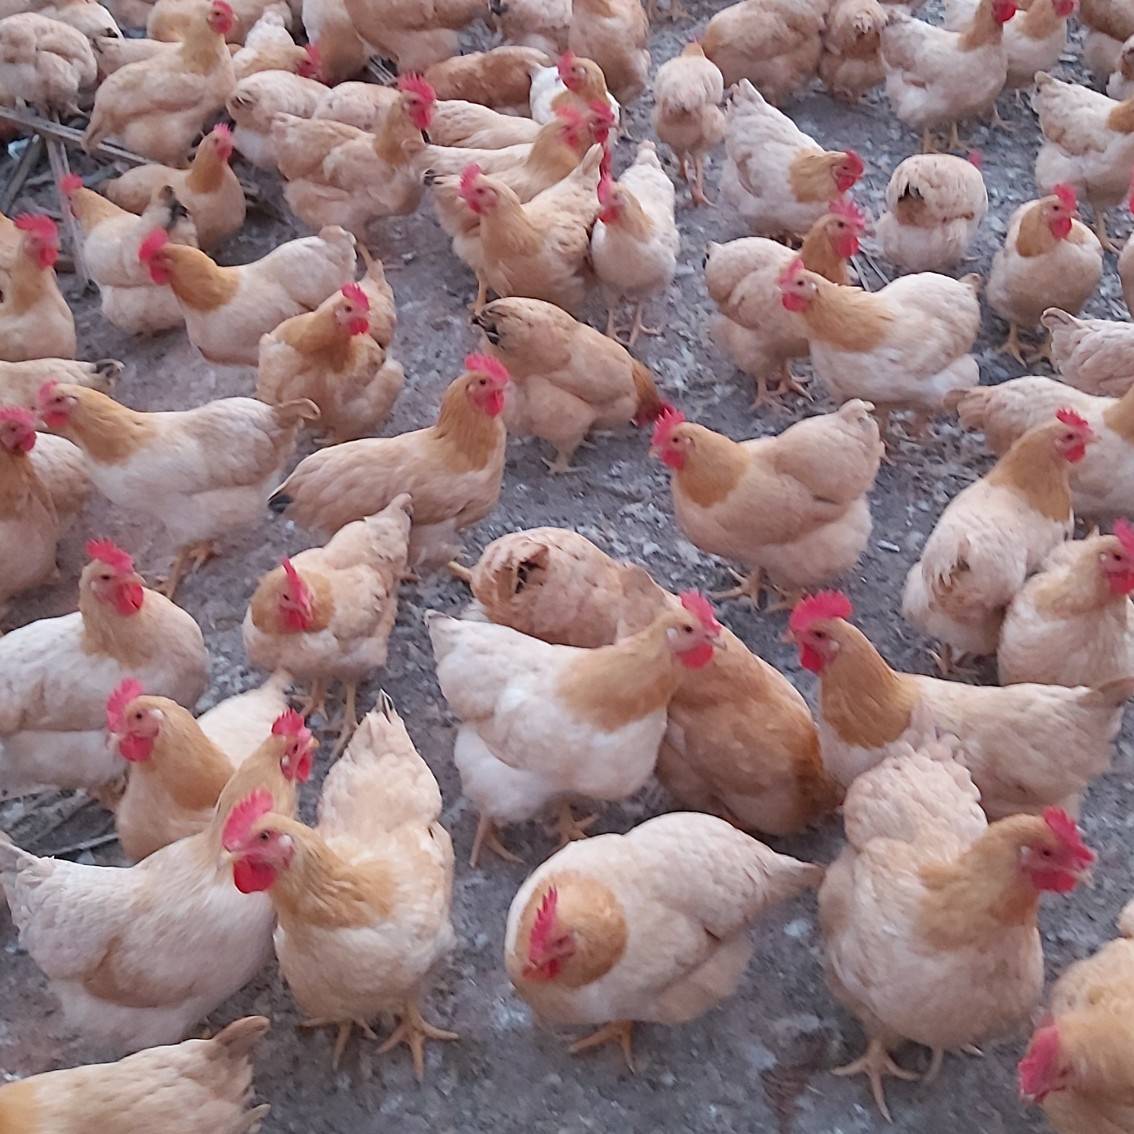 肉鸡的科学养殖需要遵循自然规律
